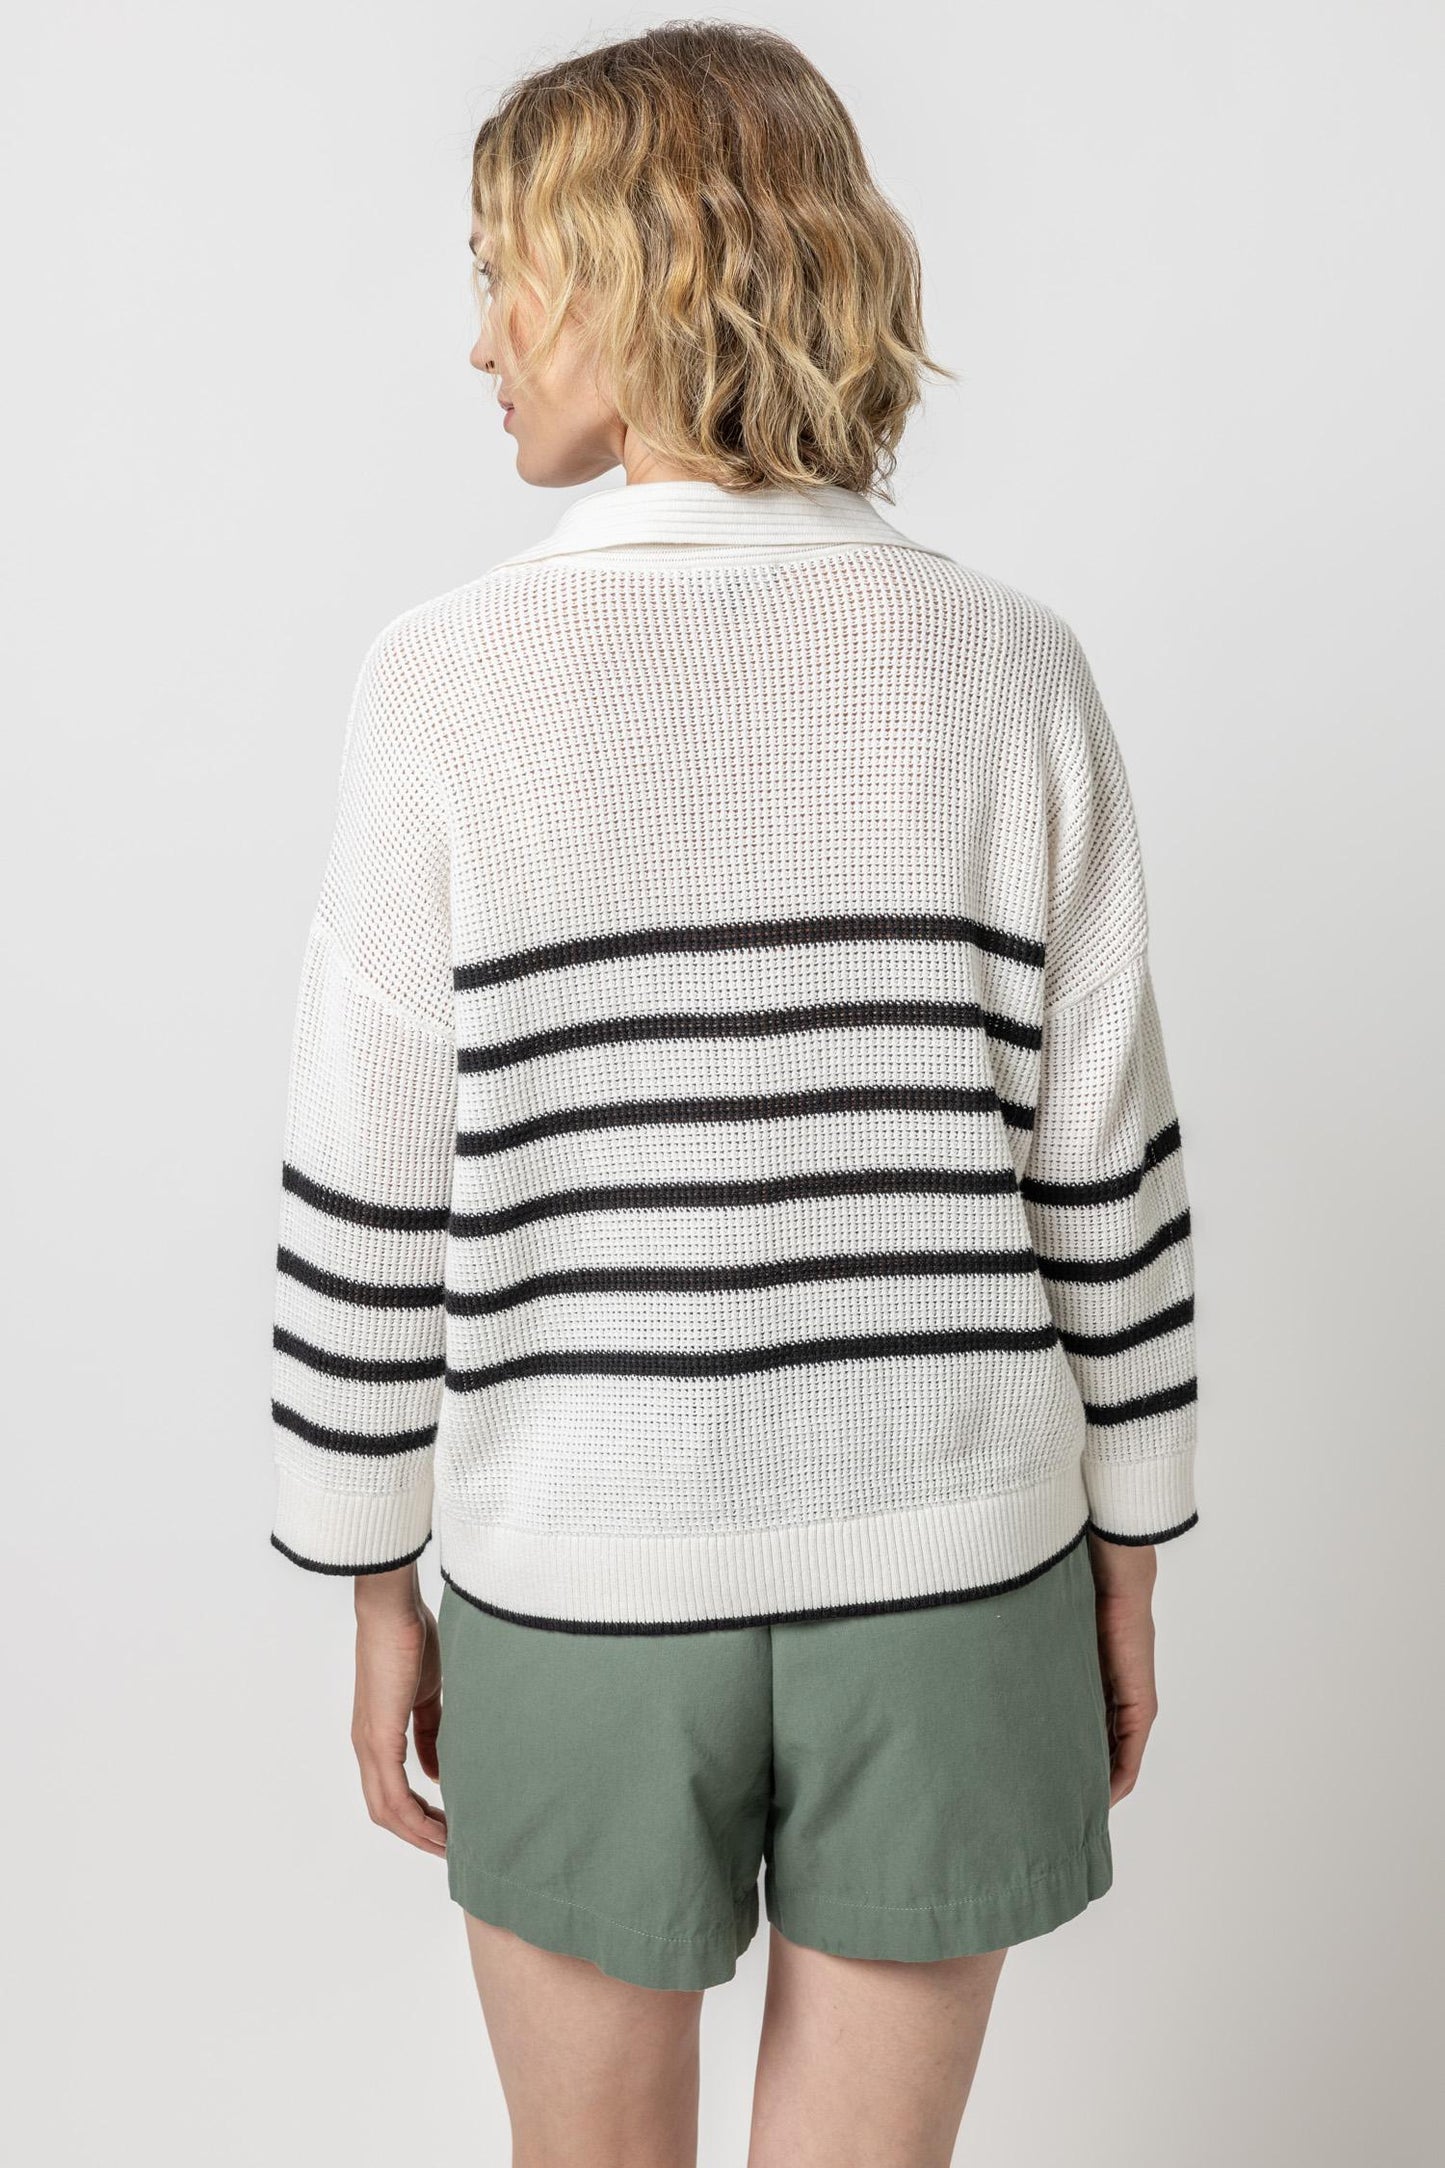 
                  
                    Lilla P | Textured Stripe Polo Sweater |  PA2480
                  
                